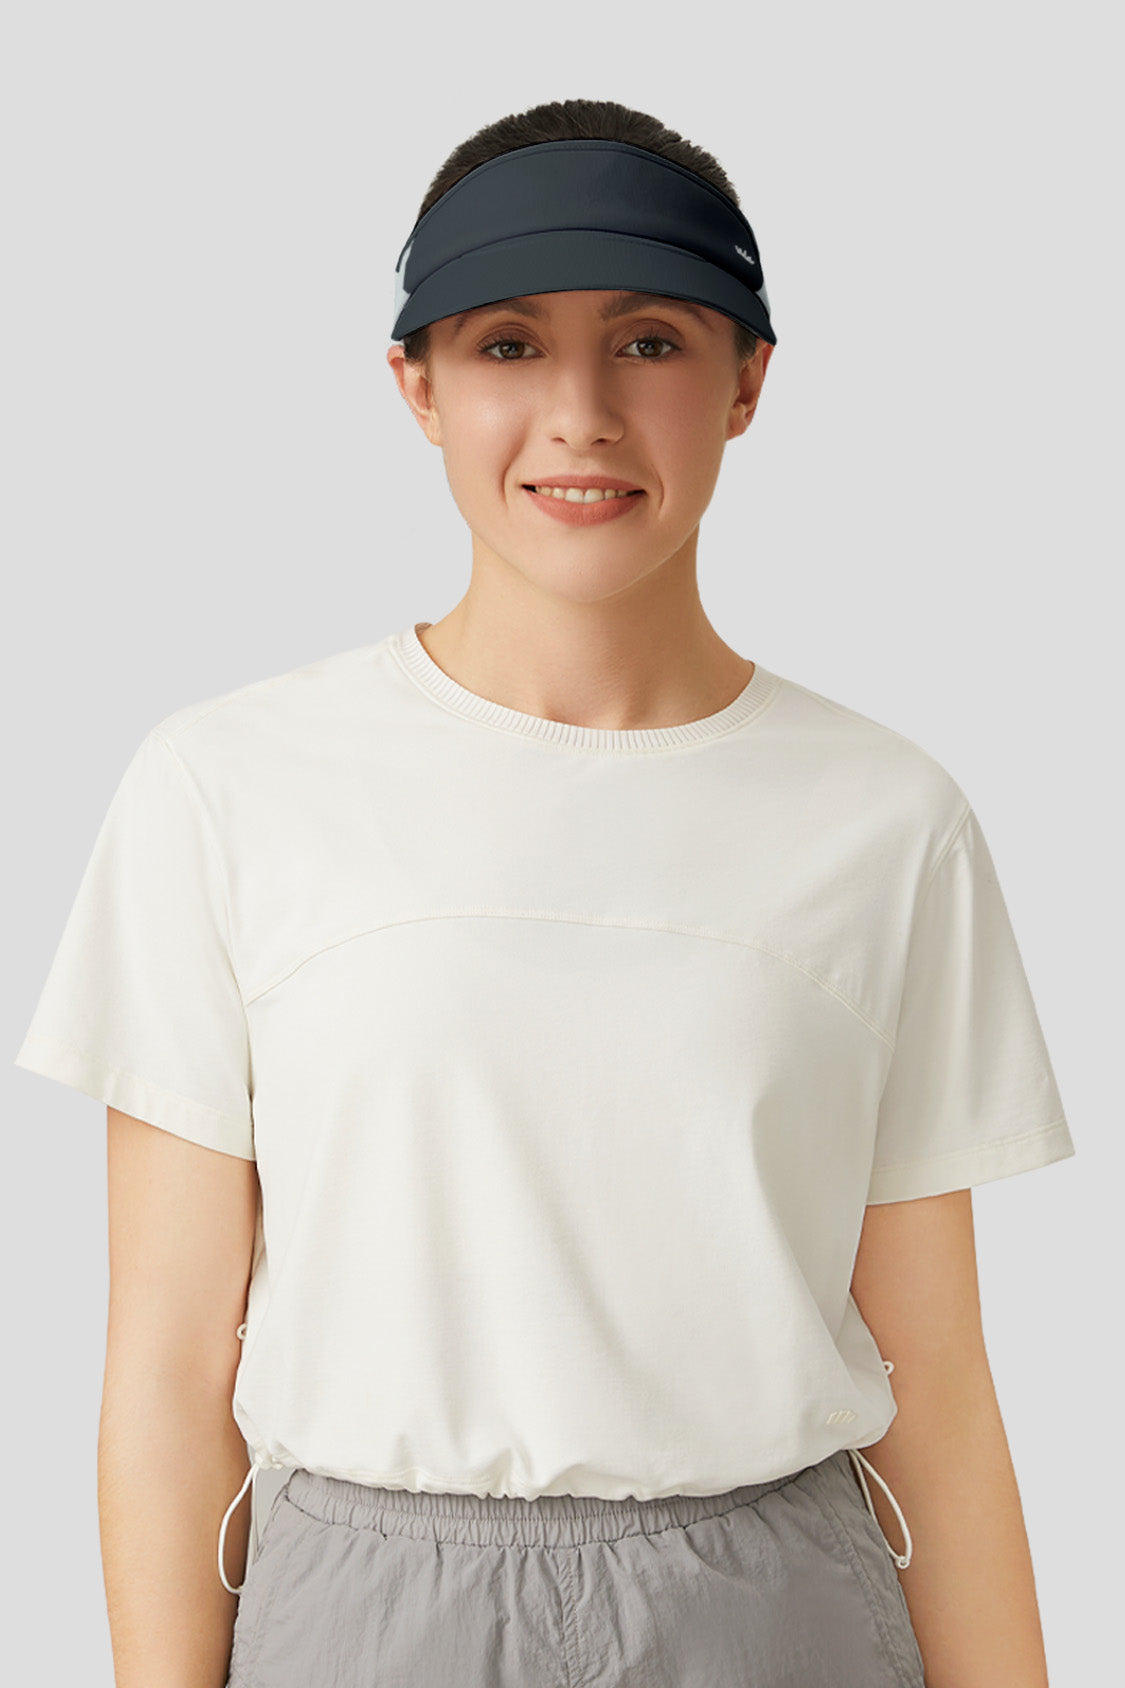 tennis hat beneunder upf50+ uv sun protection sun hat for women #color_dusk black